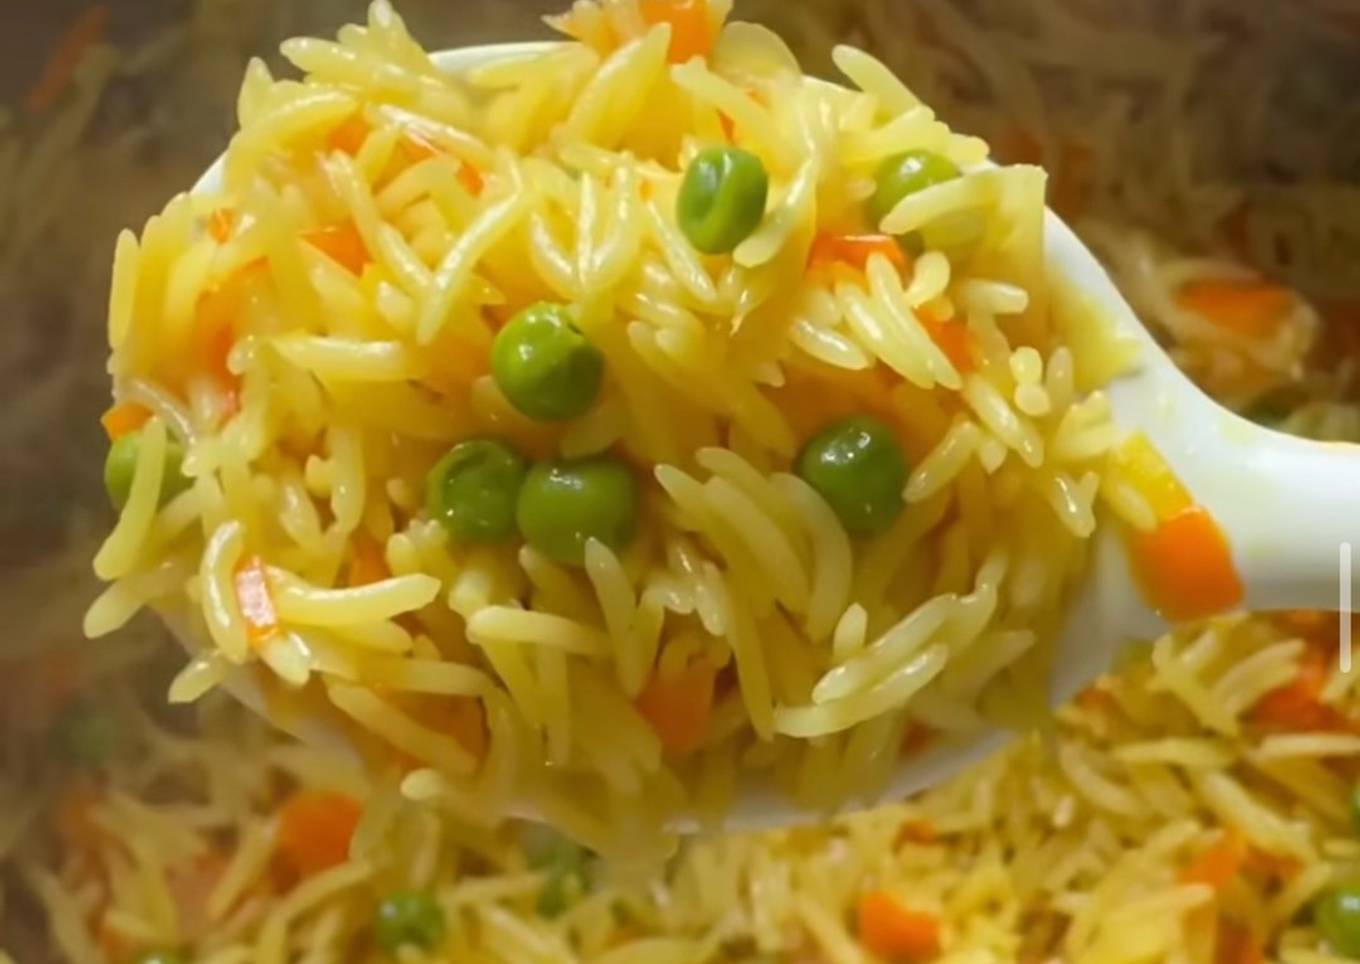 Yellow veg rice